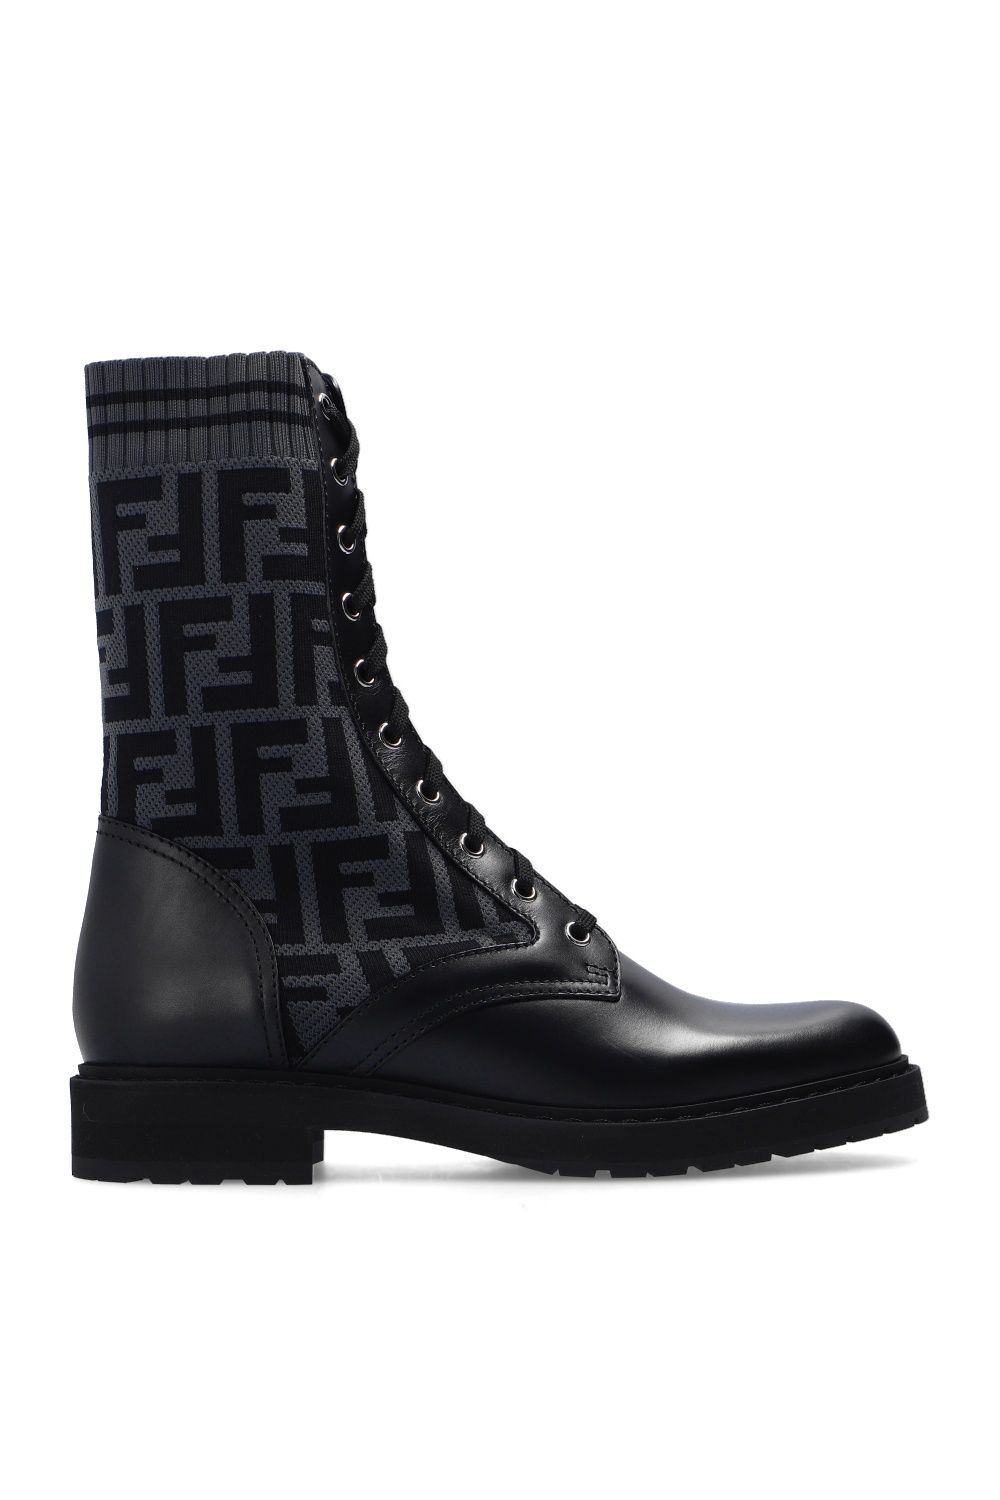 fendi boots on sale